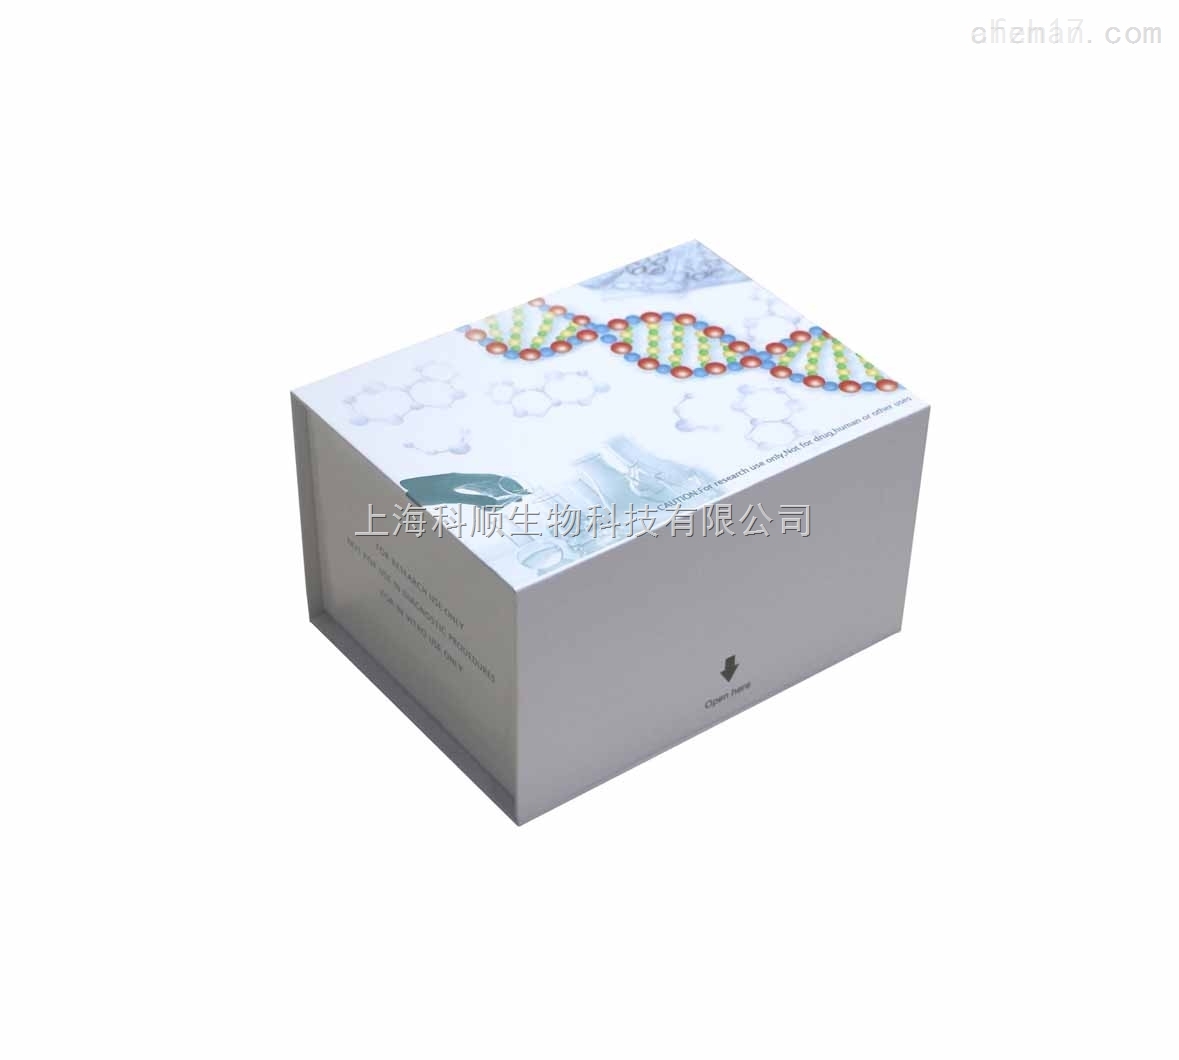 小鼠MIP-1δ/CCL15检测试剂盒说明书